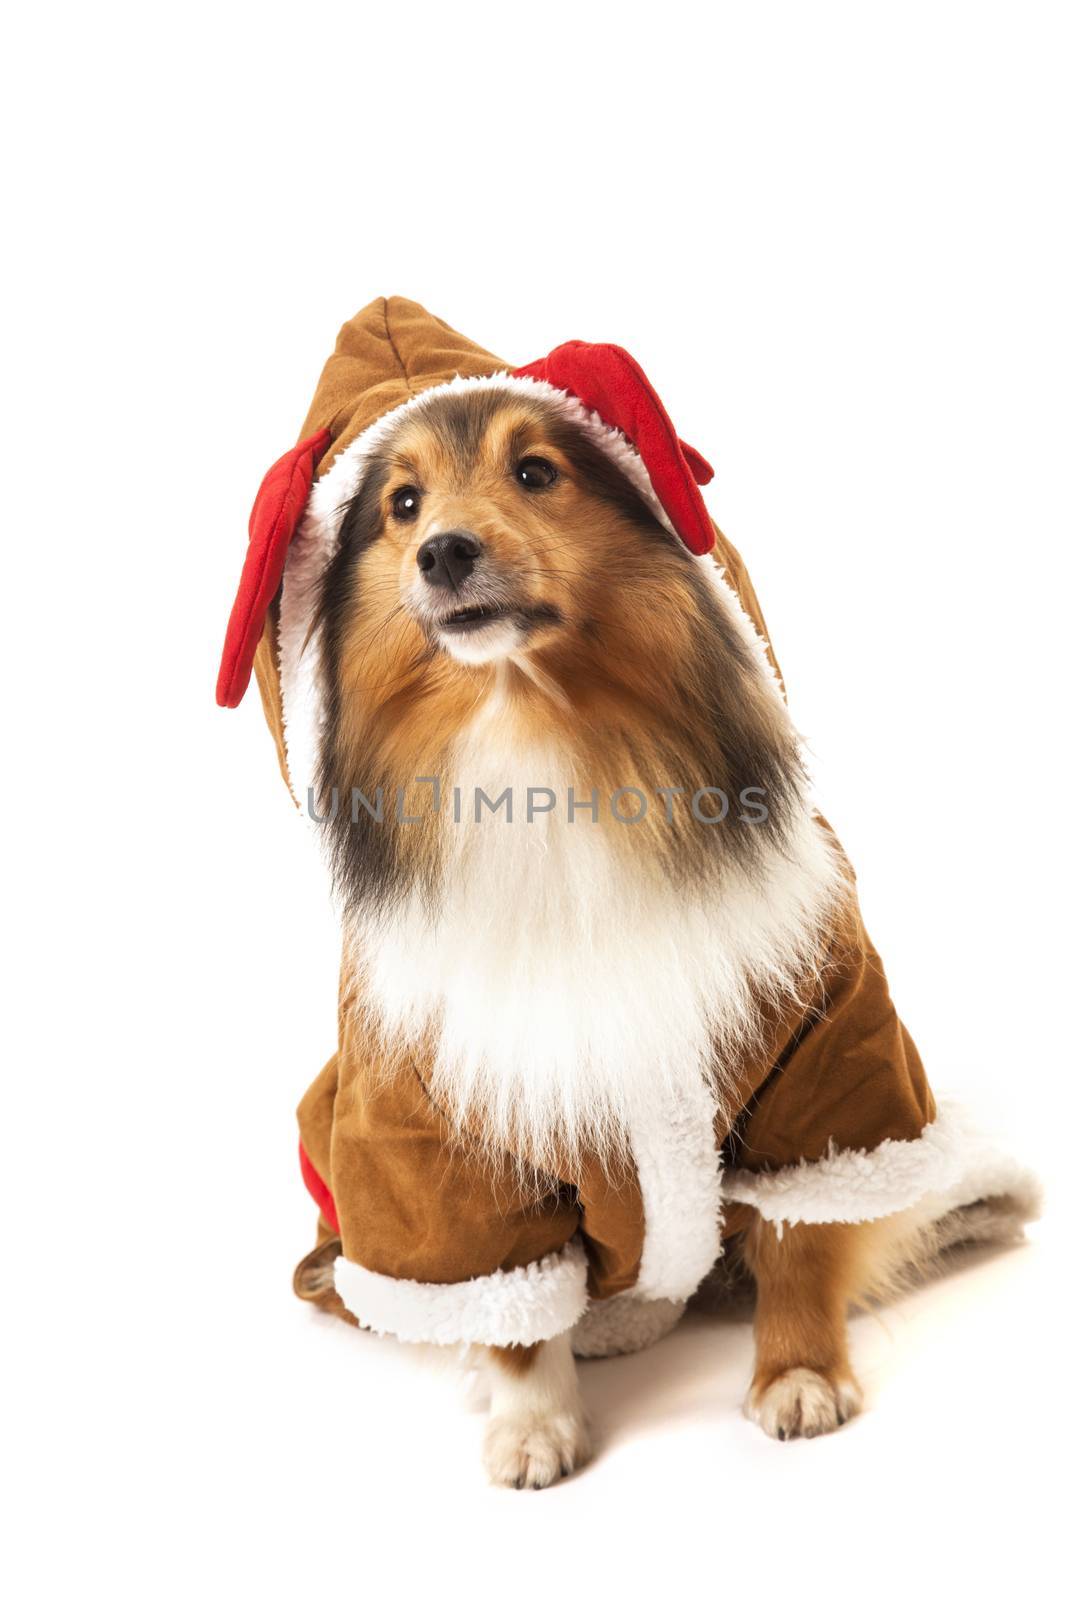 Portrait of dog in reindeer costume by Aarstudio